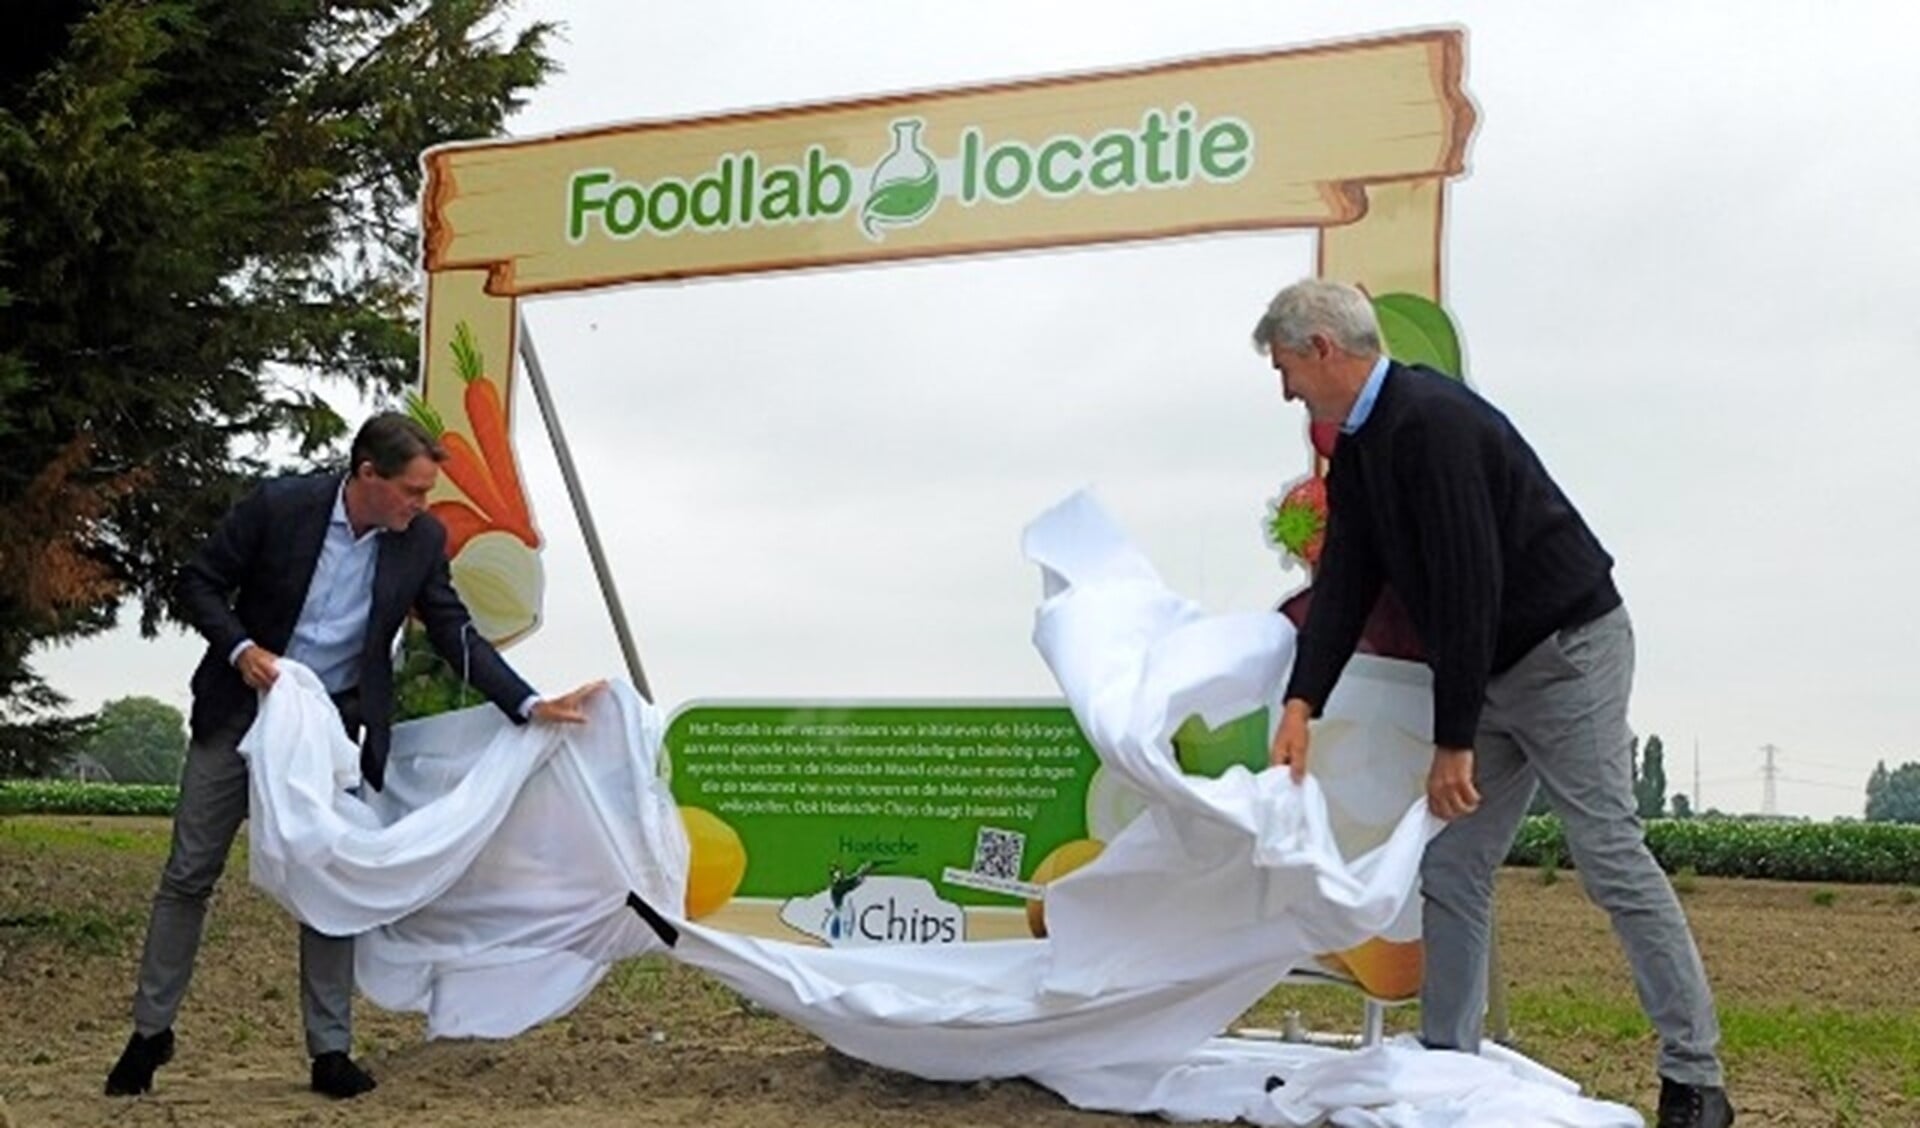 Wethouder Paul Boogaard en Henk Scheele(rechts) onthullen het bord wat de Foodlab locatie aangeeft. (foto: Arie Pieters)